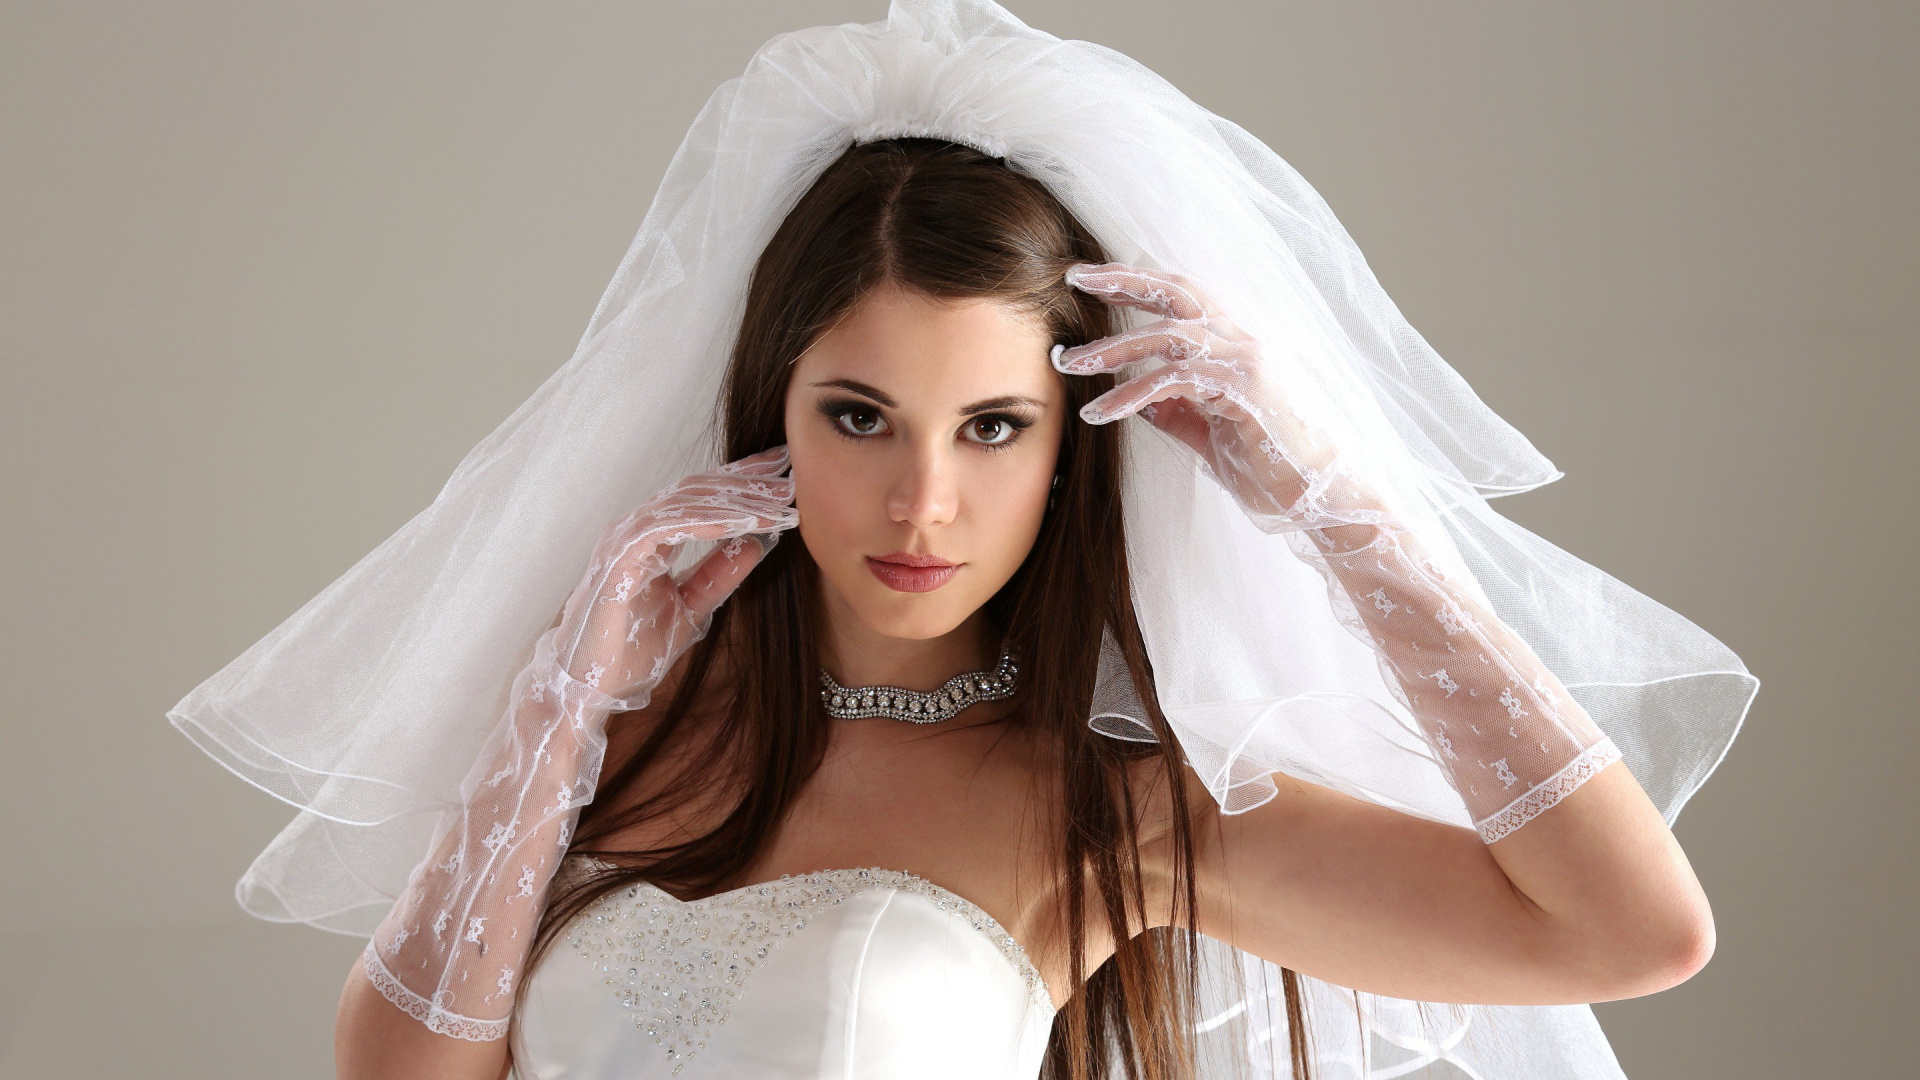 婚礼礼服, 时尚的附件, 头盔, 外套, 头饰 壁纸 1920x1080 允许